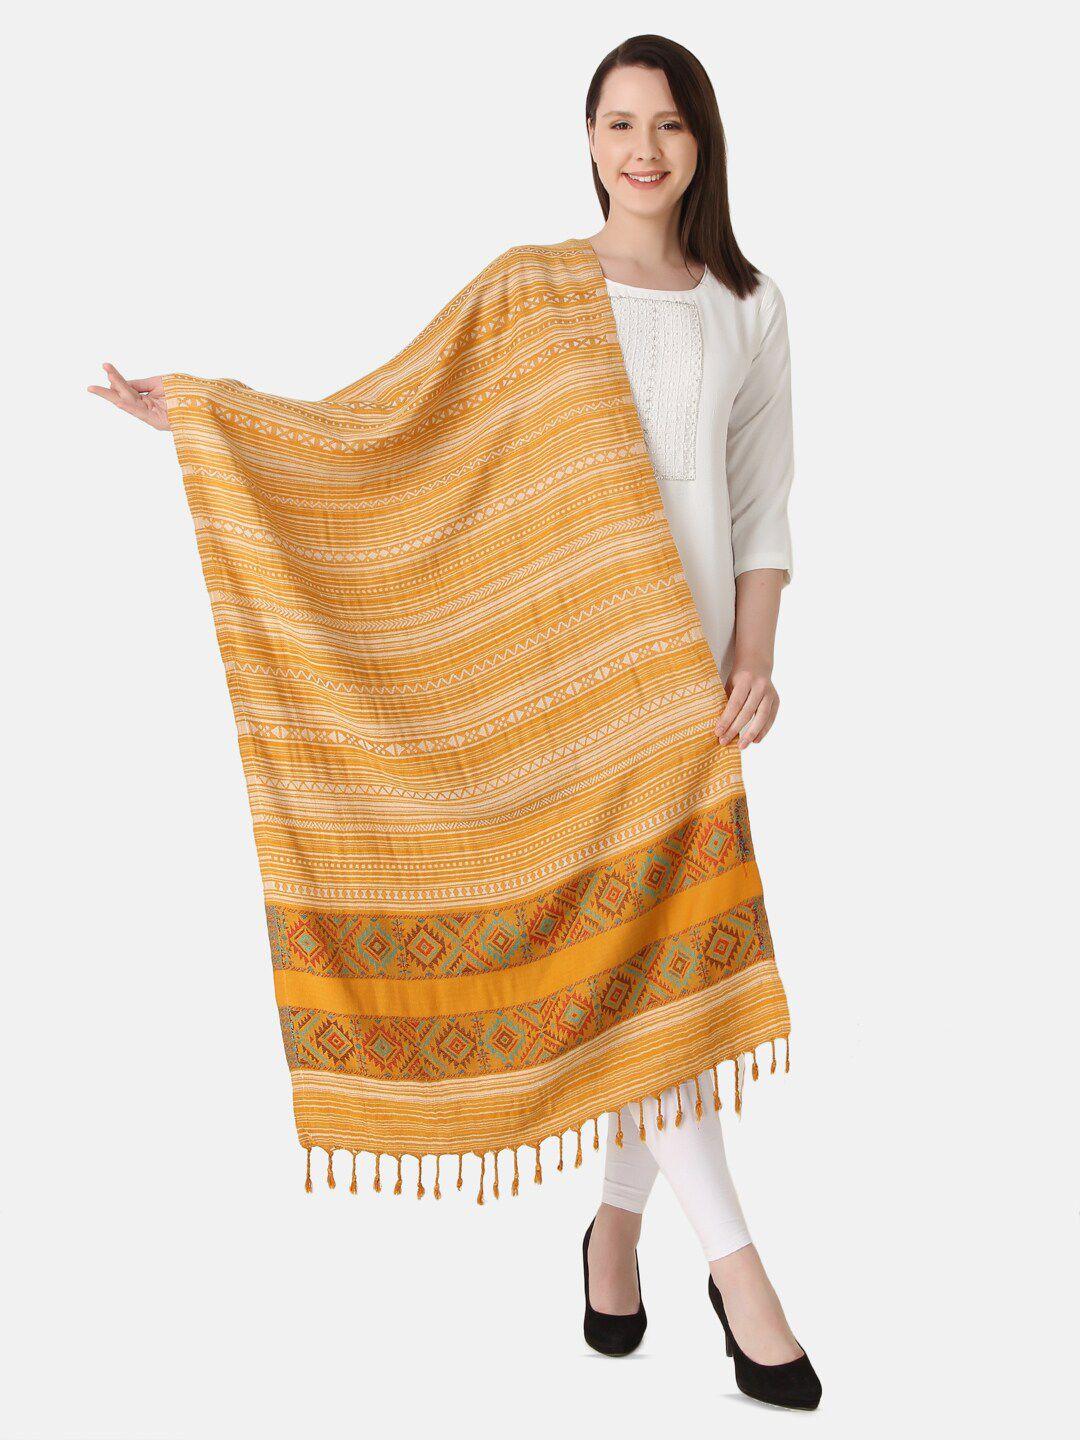 evaz woven design tasselled border woolen shawl